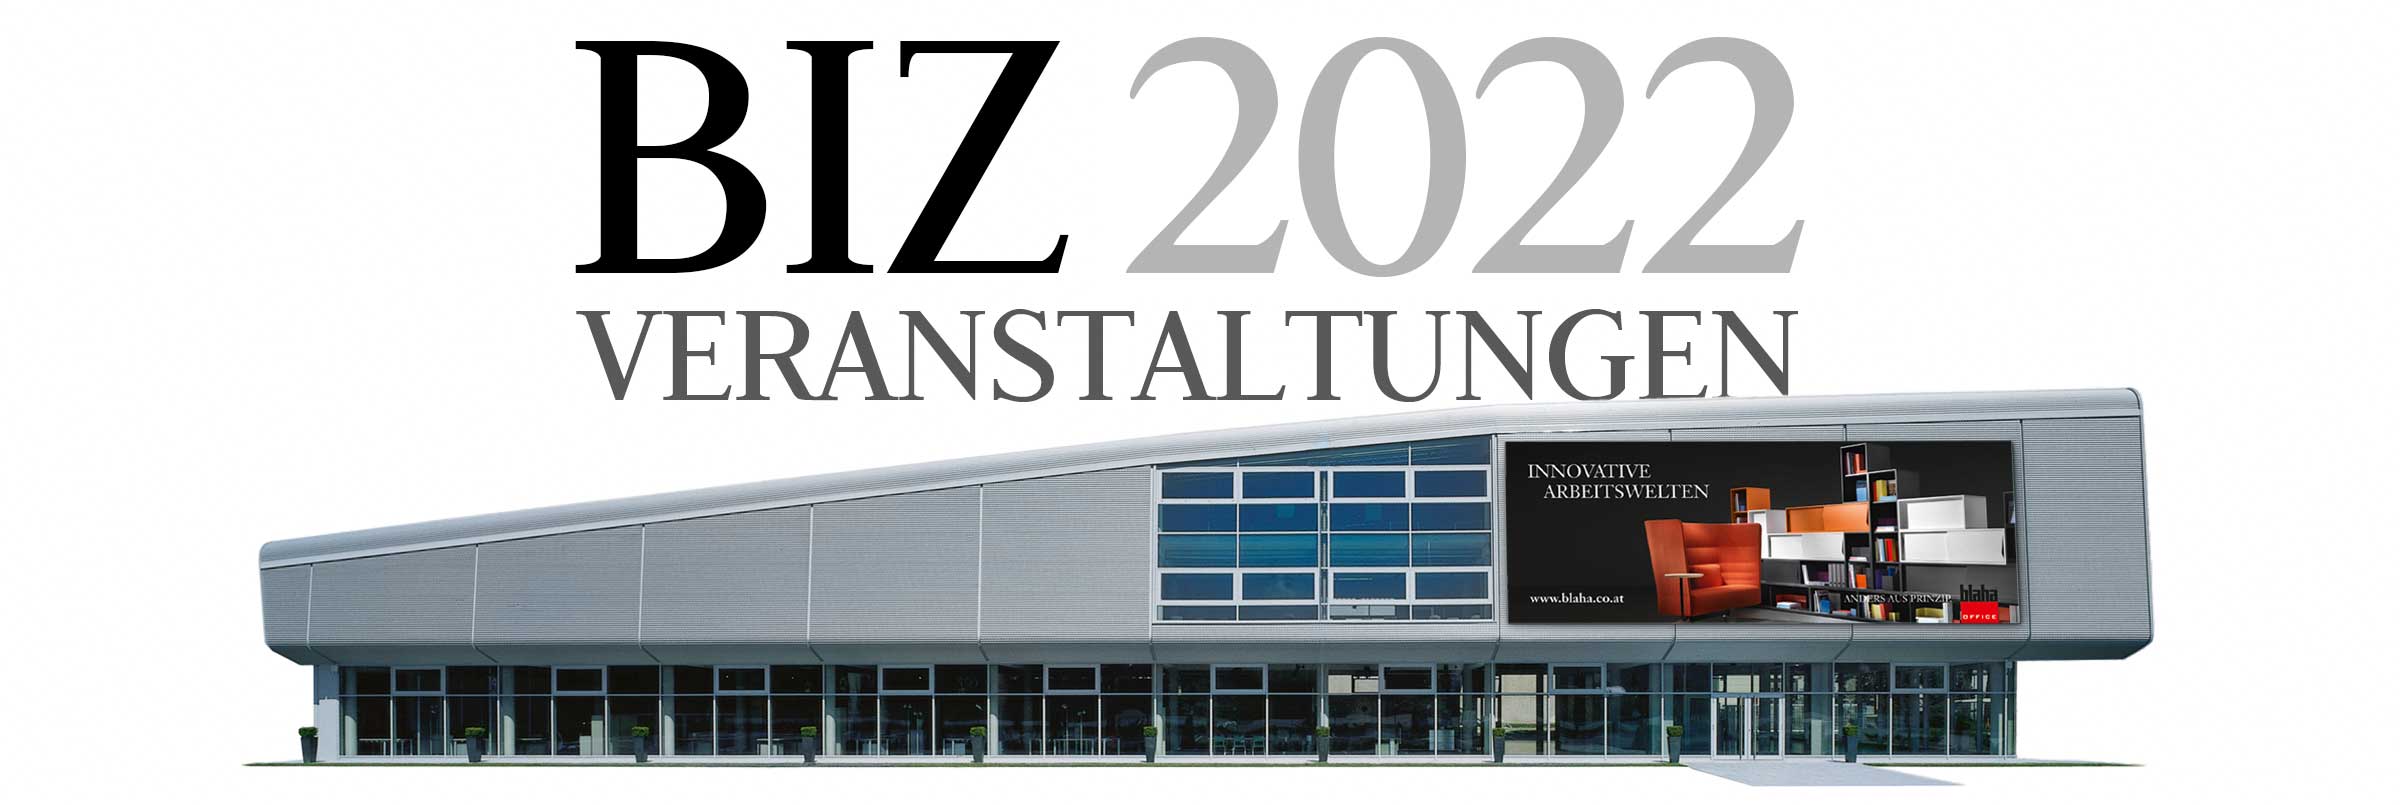 f21 header 2022 2400 veranstaltungen